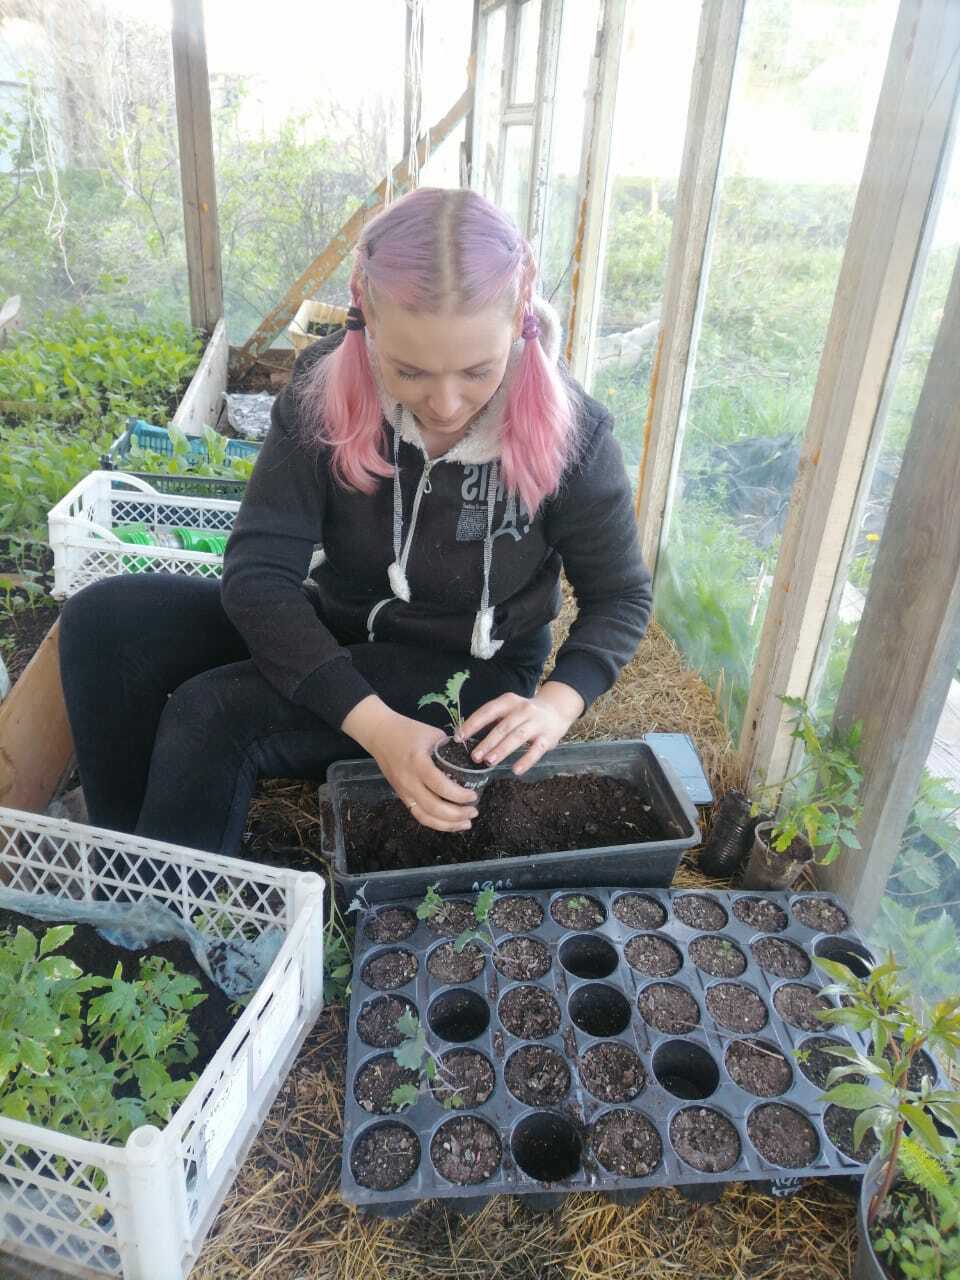 Огород без забот, или как нелюбимое занятие стало источником дохода для Елены Курбановой из Чишминского района